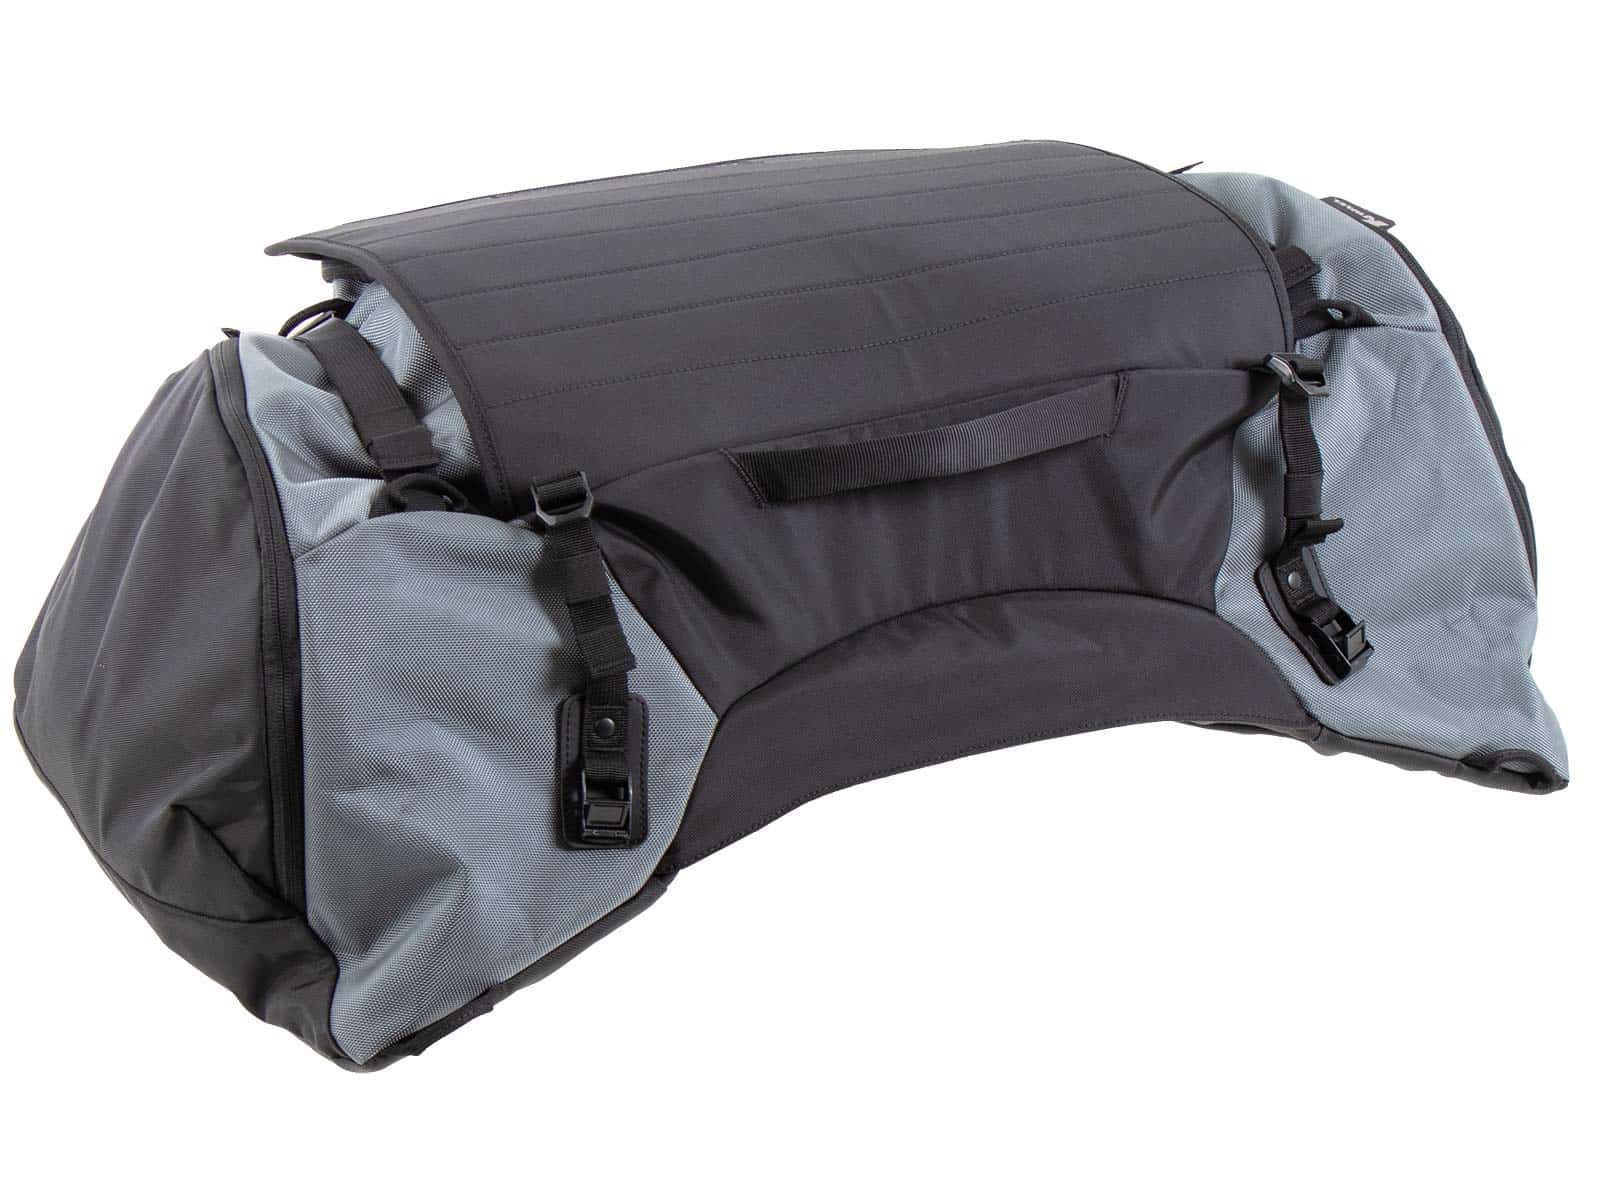 Xtravel rear bag XL 50 ltr.